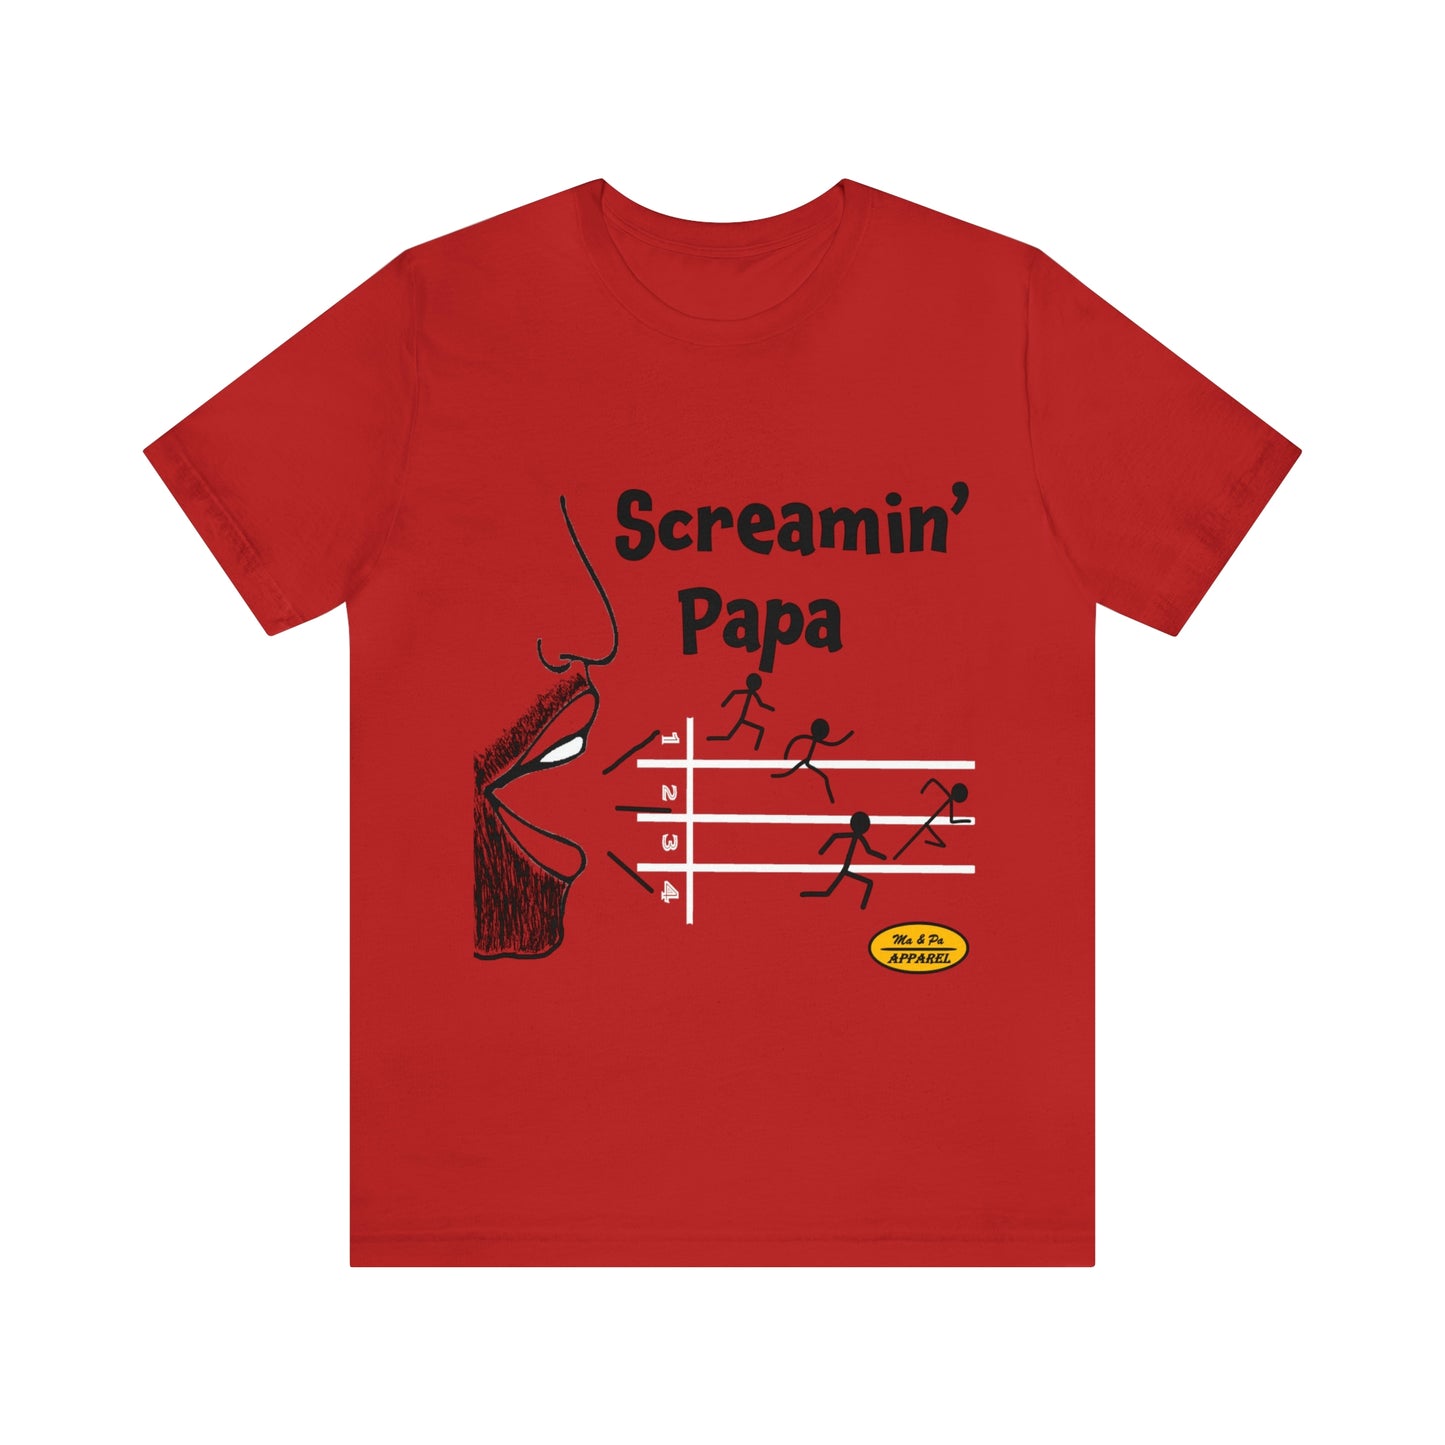 Screamin’ Papa Track Short Sleeve Tee